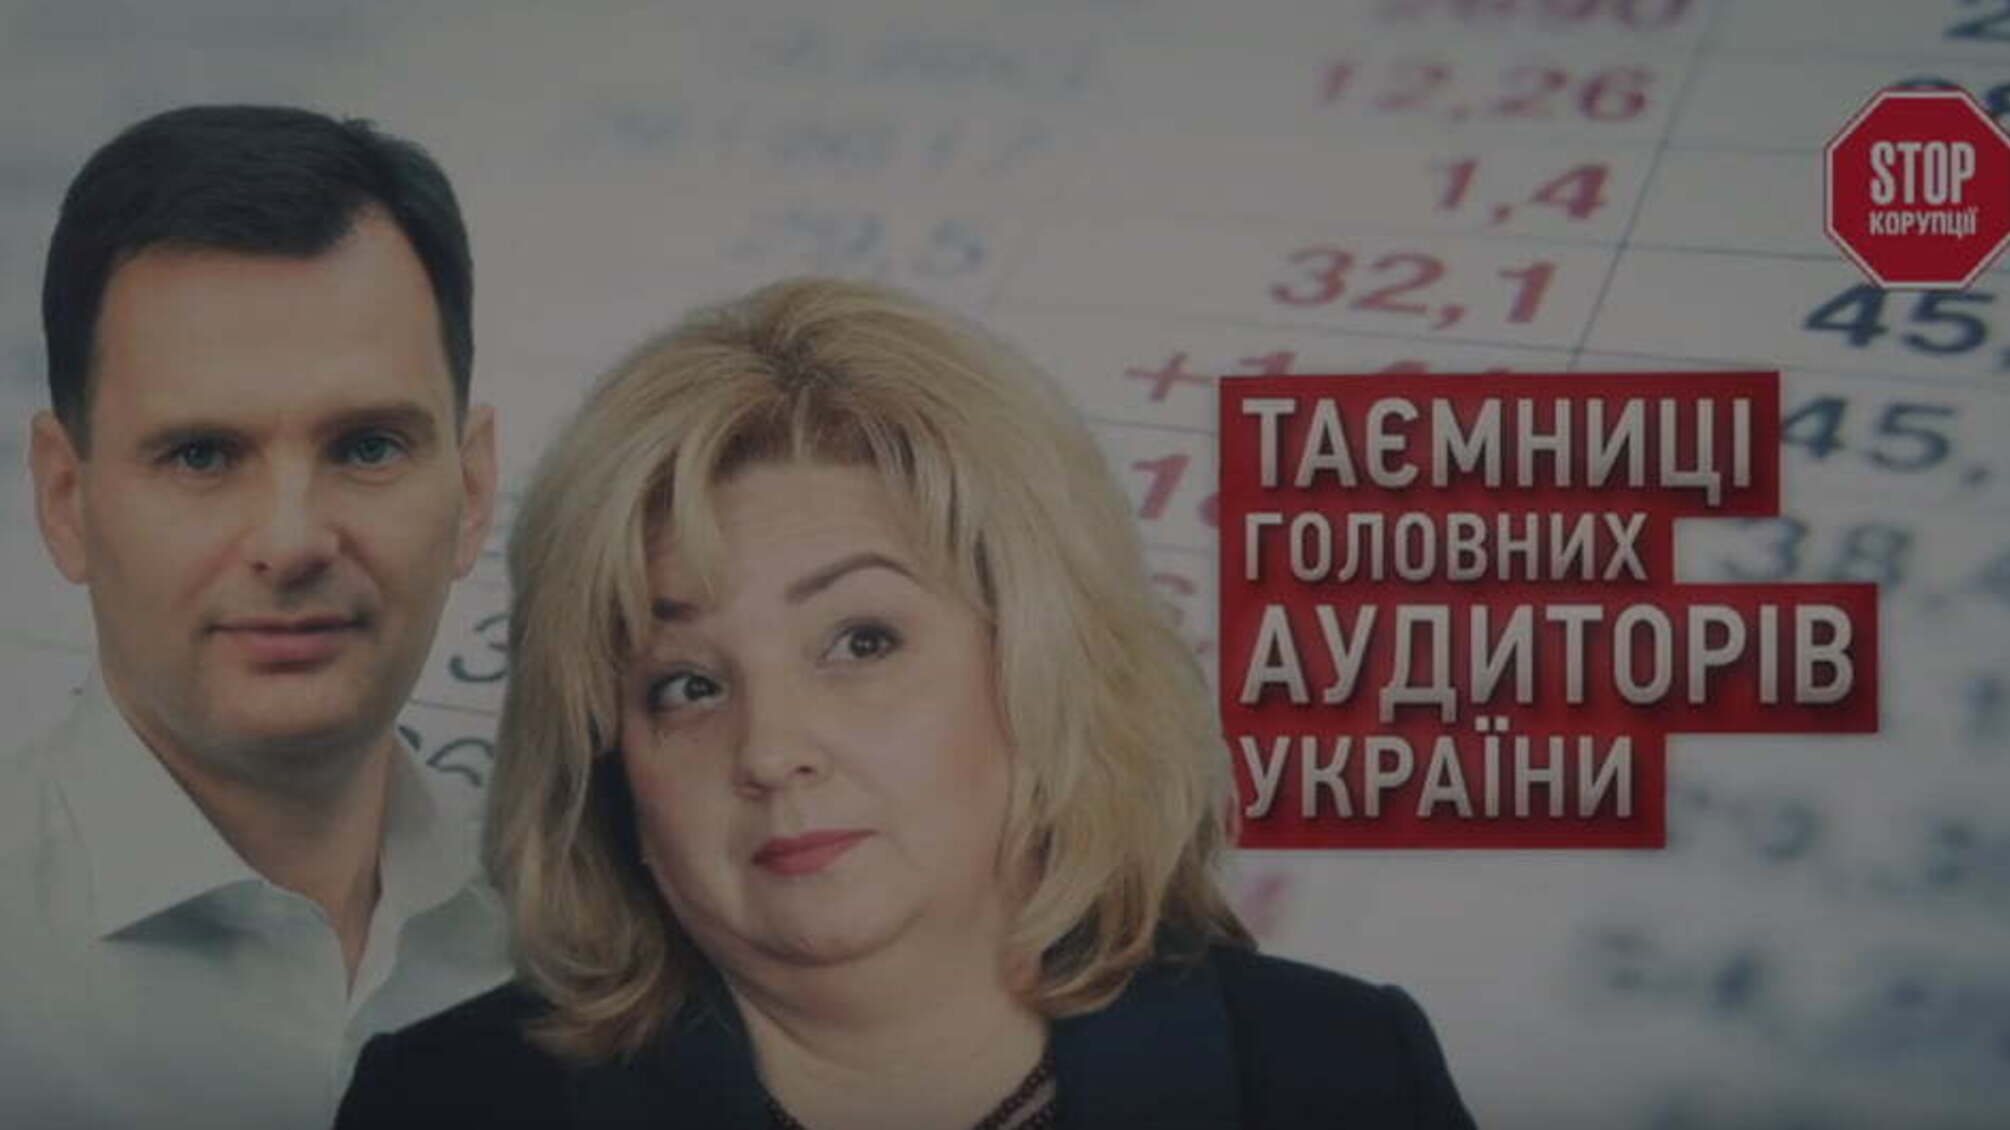 Таємниці головних аудиторів України - як державні чиновники вміло приховують свої мільйони